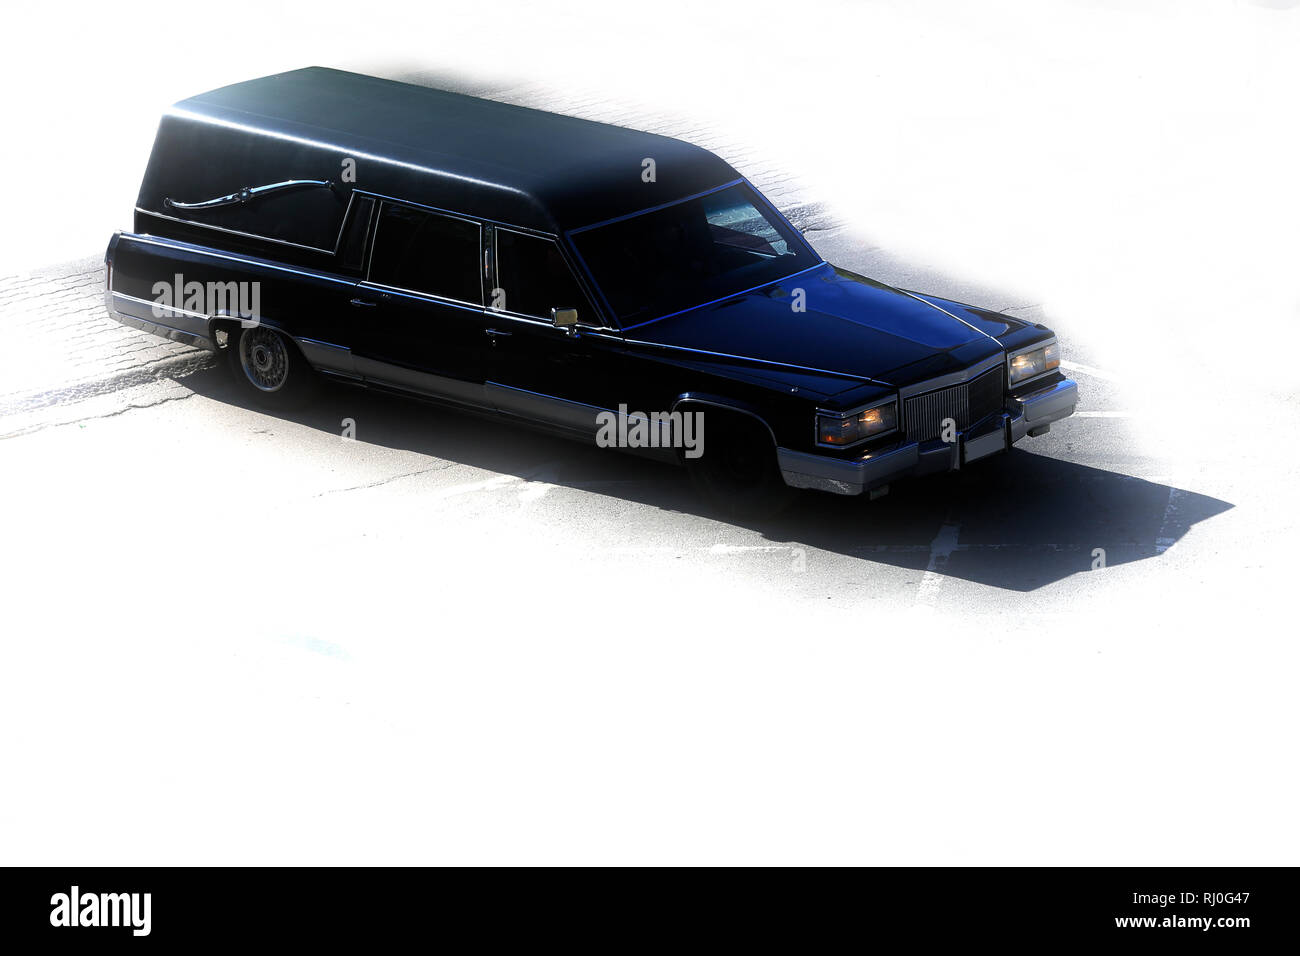 Classic schwarz Beerdigung Fahrzeug oder leichenwagen Auto, oben, mit Diesig, stilisierten weißen Hintergrund und keine Menschen. Kopieren Sie Platz. Stockfoto